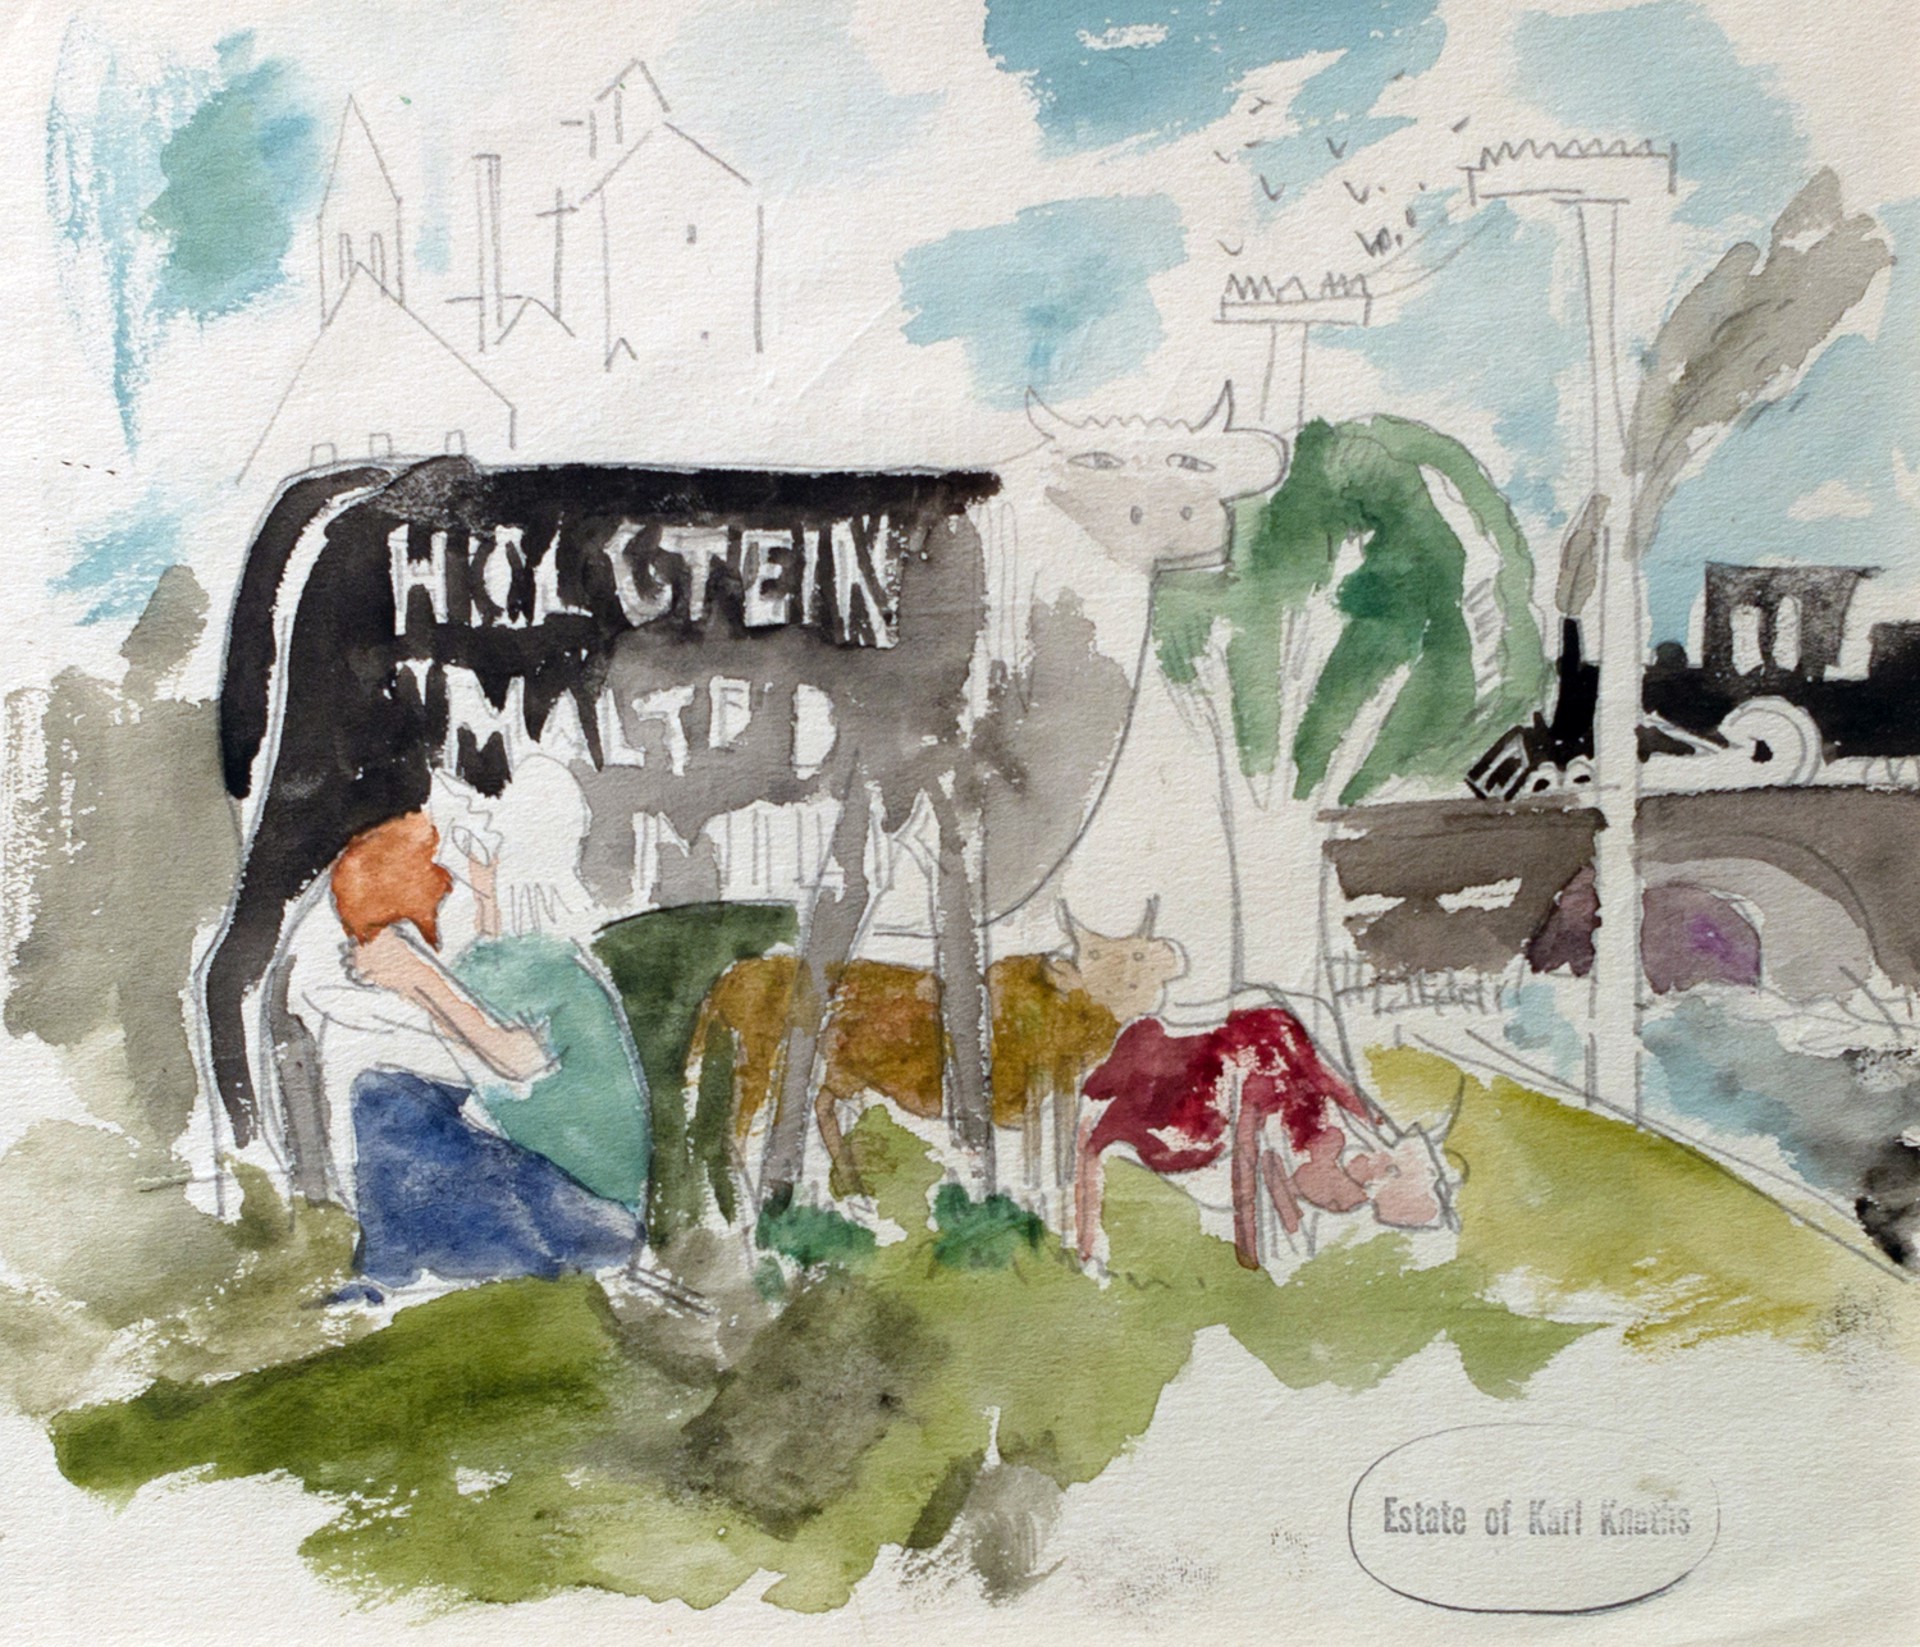 Holstein Malted by Karl Knaths